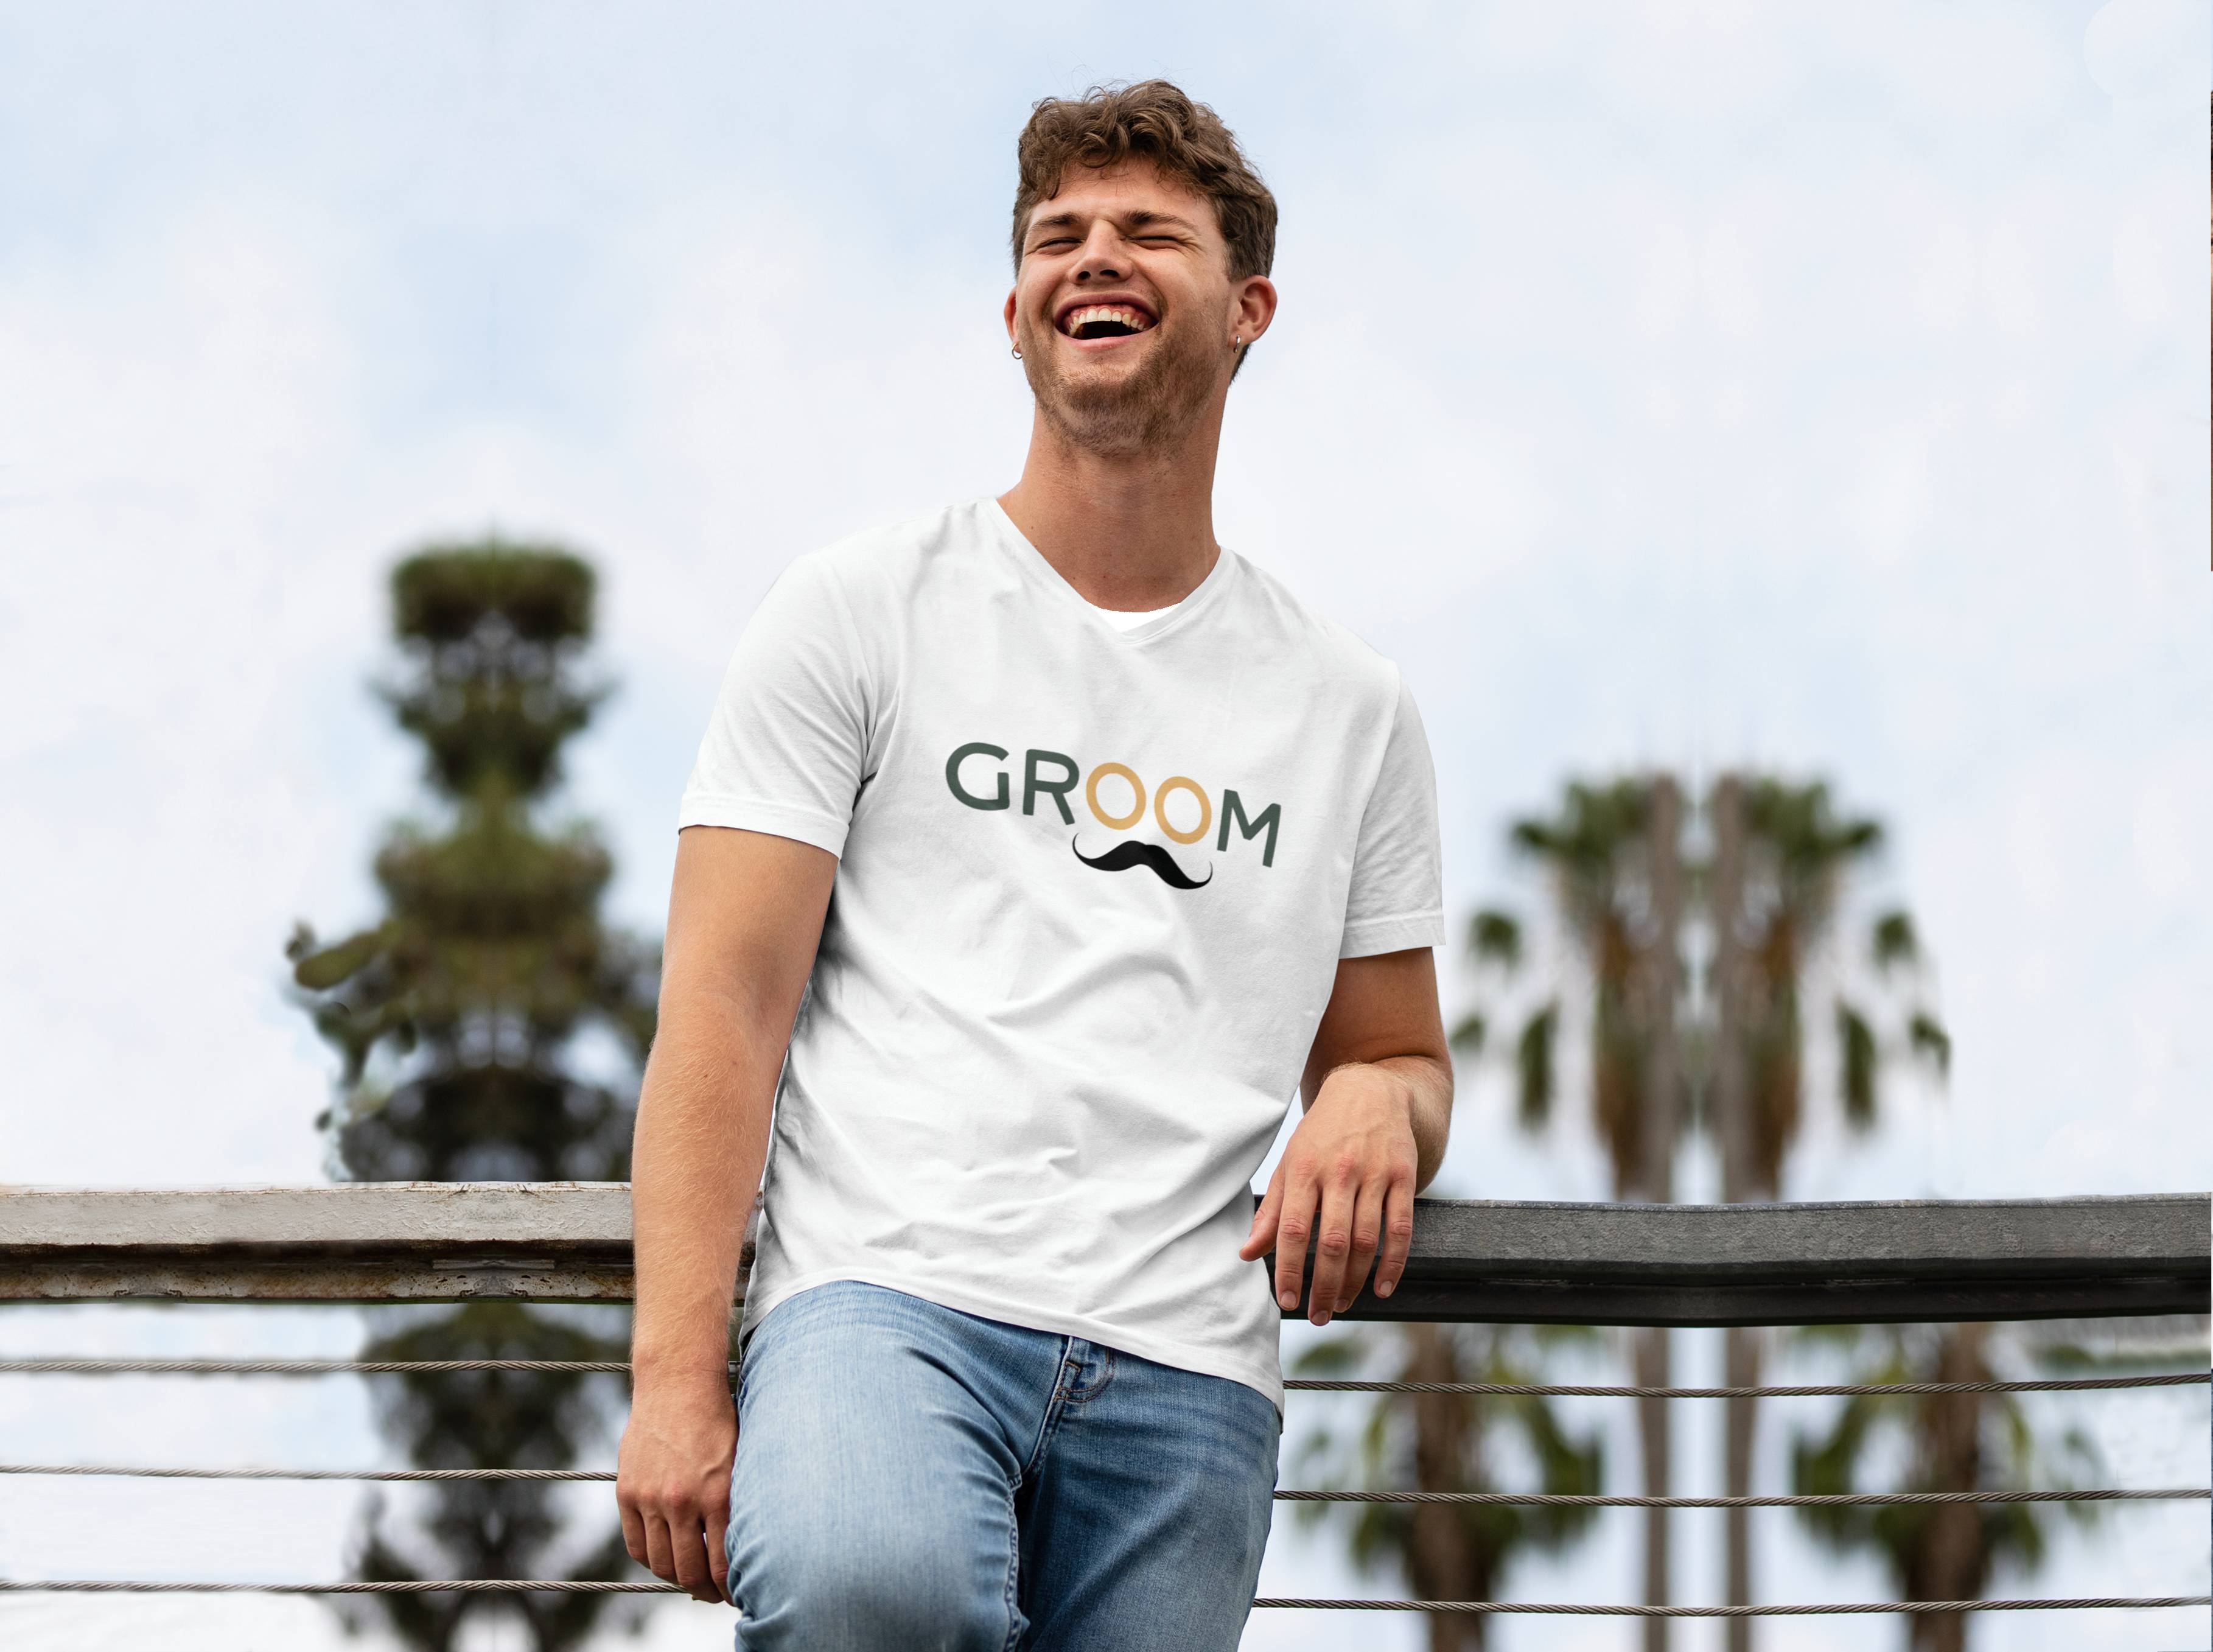 Personal Pánske tričko - Groom Farba: biela, Veľkosť - dospelý: L